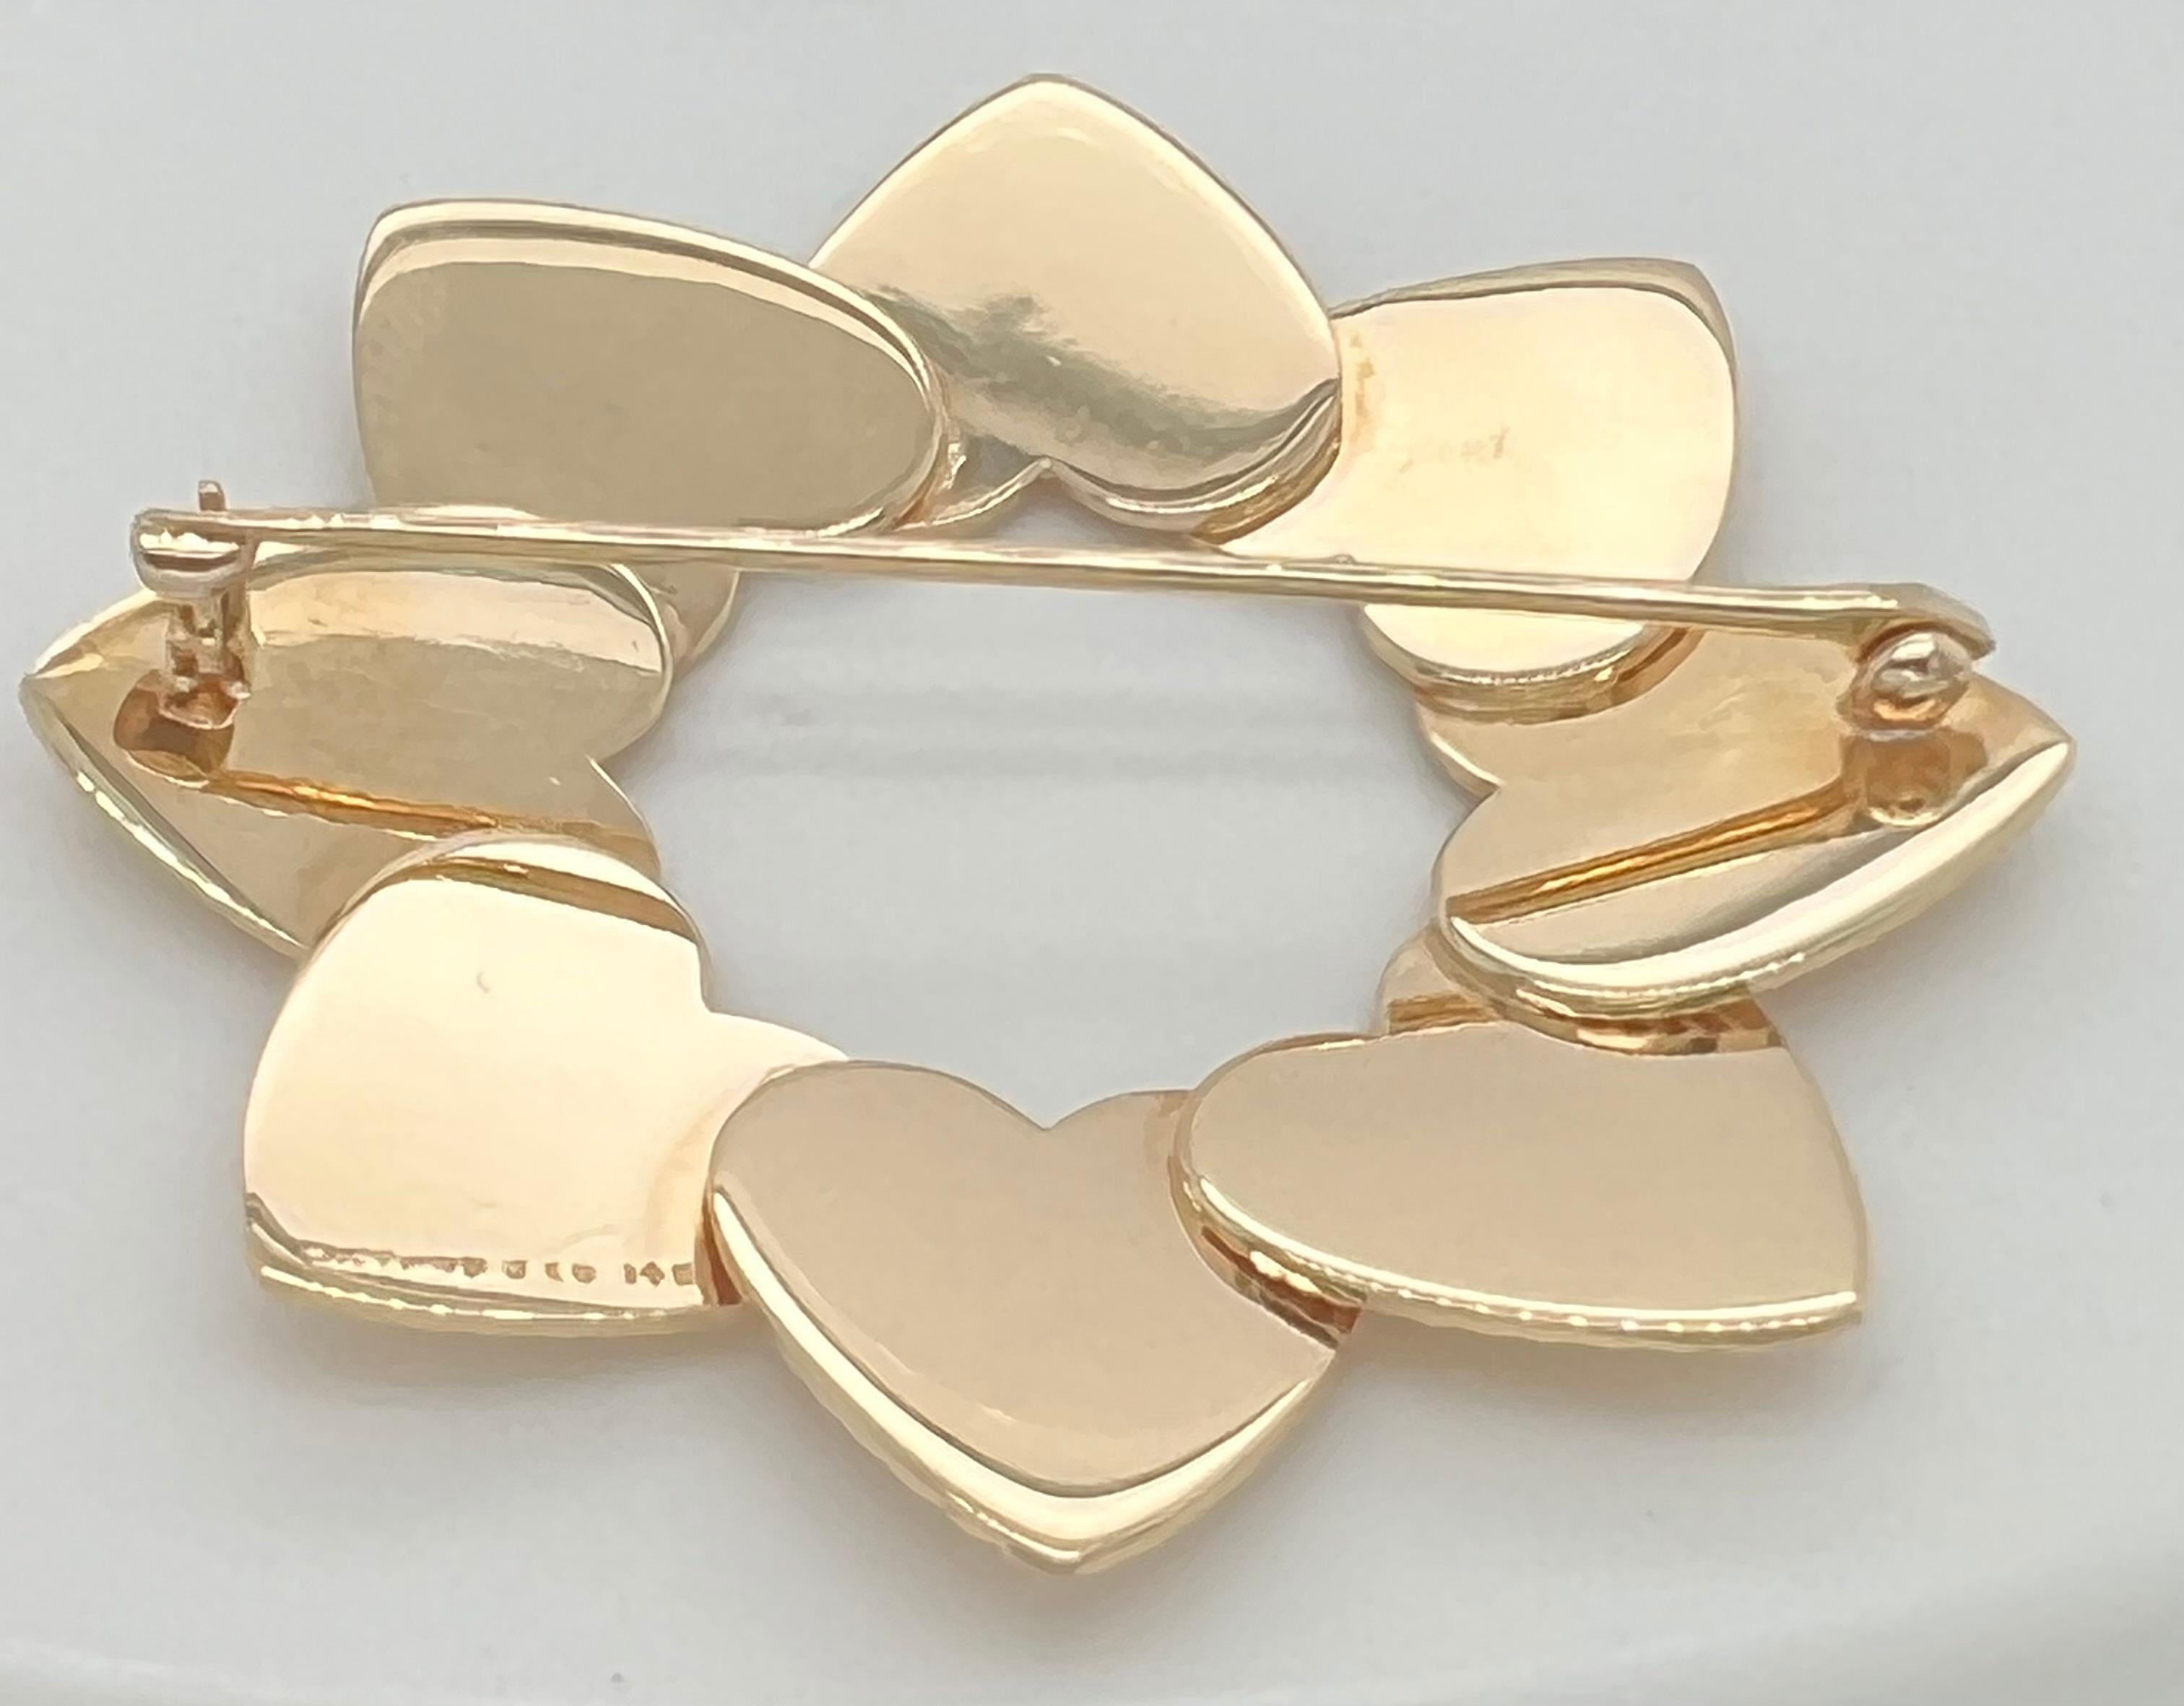 Schicke Retro-Herz-Anstecknadel.  Hergestellt und signiert von TIFFANY & CO. Bestehend aus acht ineinandergreifenden figuralen Herzen, die mit einem feinen Linienmuster tief eingraviert sind.  14K Gelbgold.  1 3/4